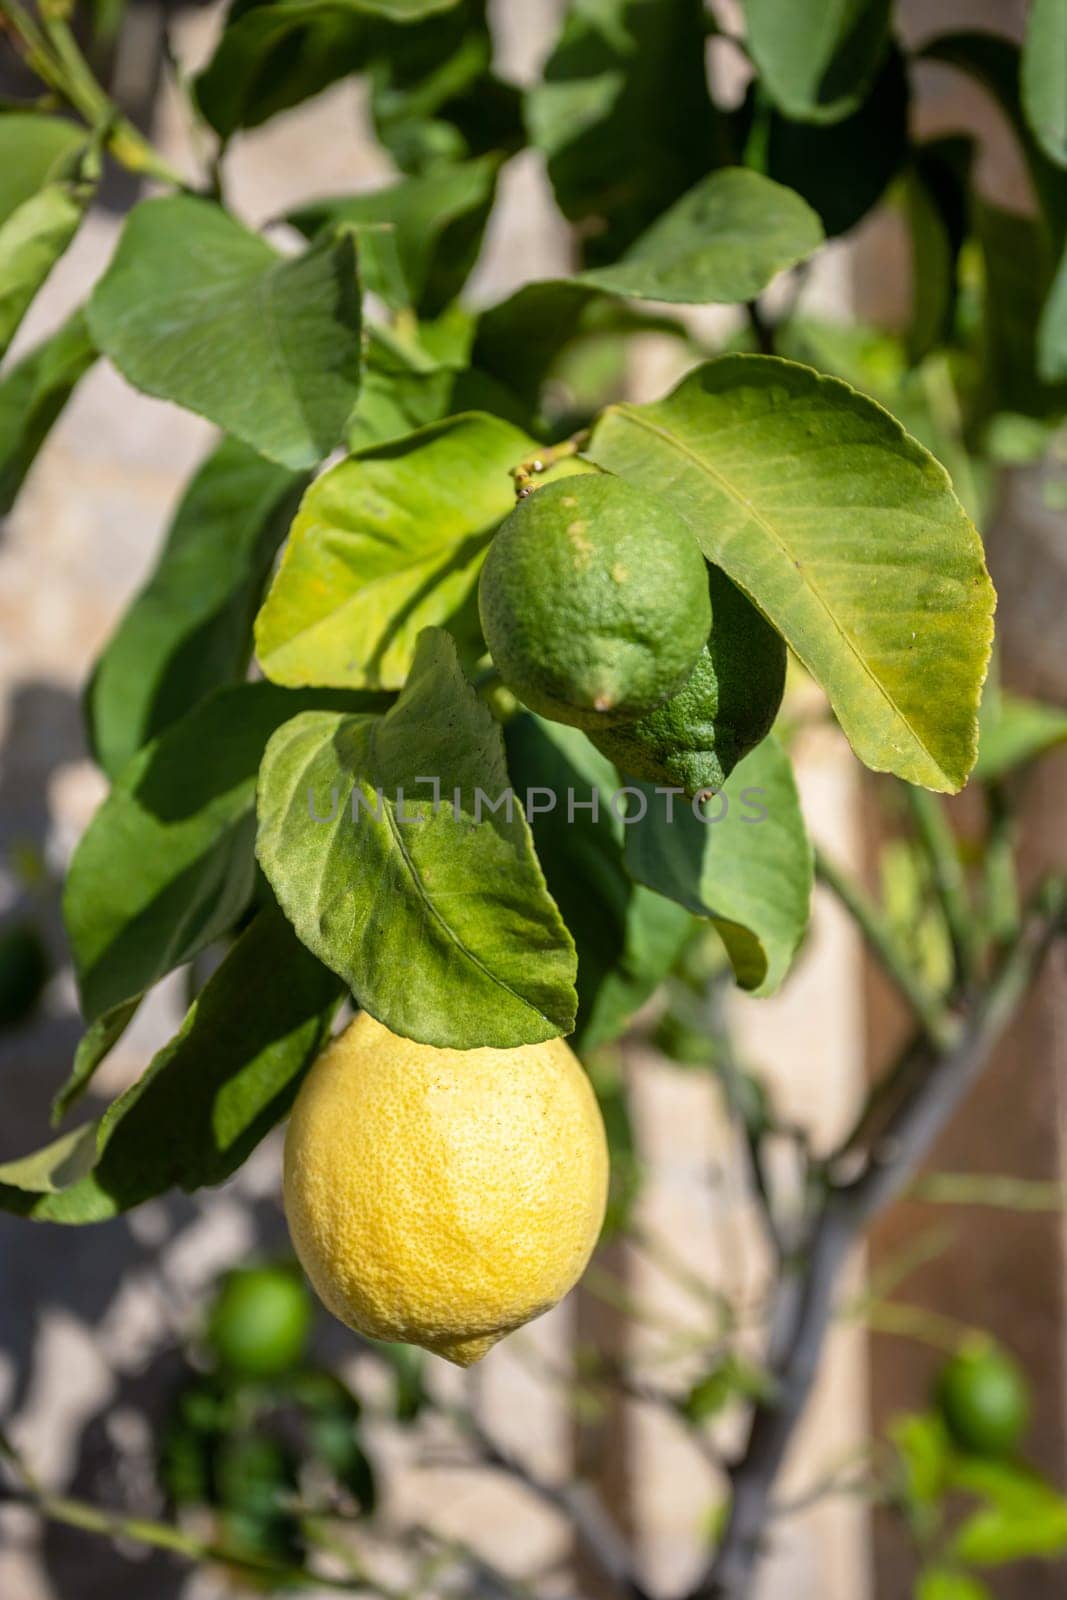 Lemon plant by germanopoli